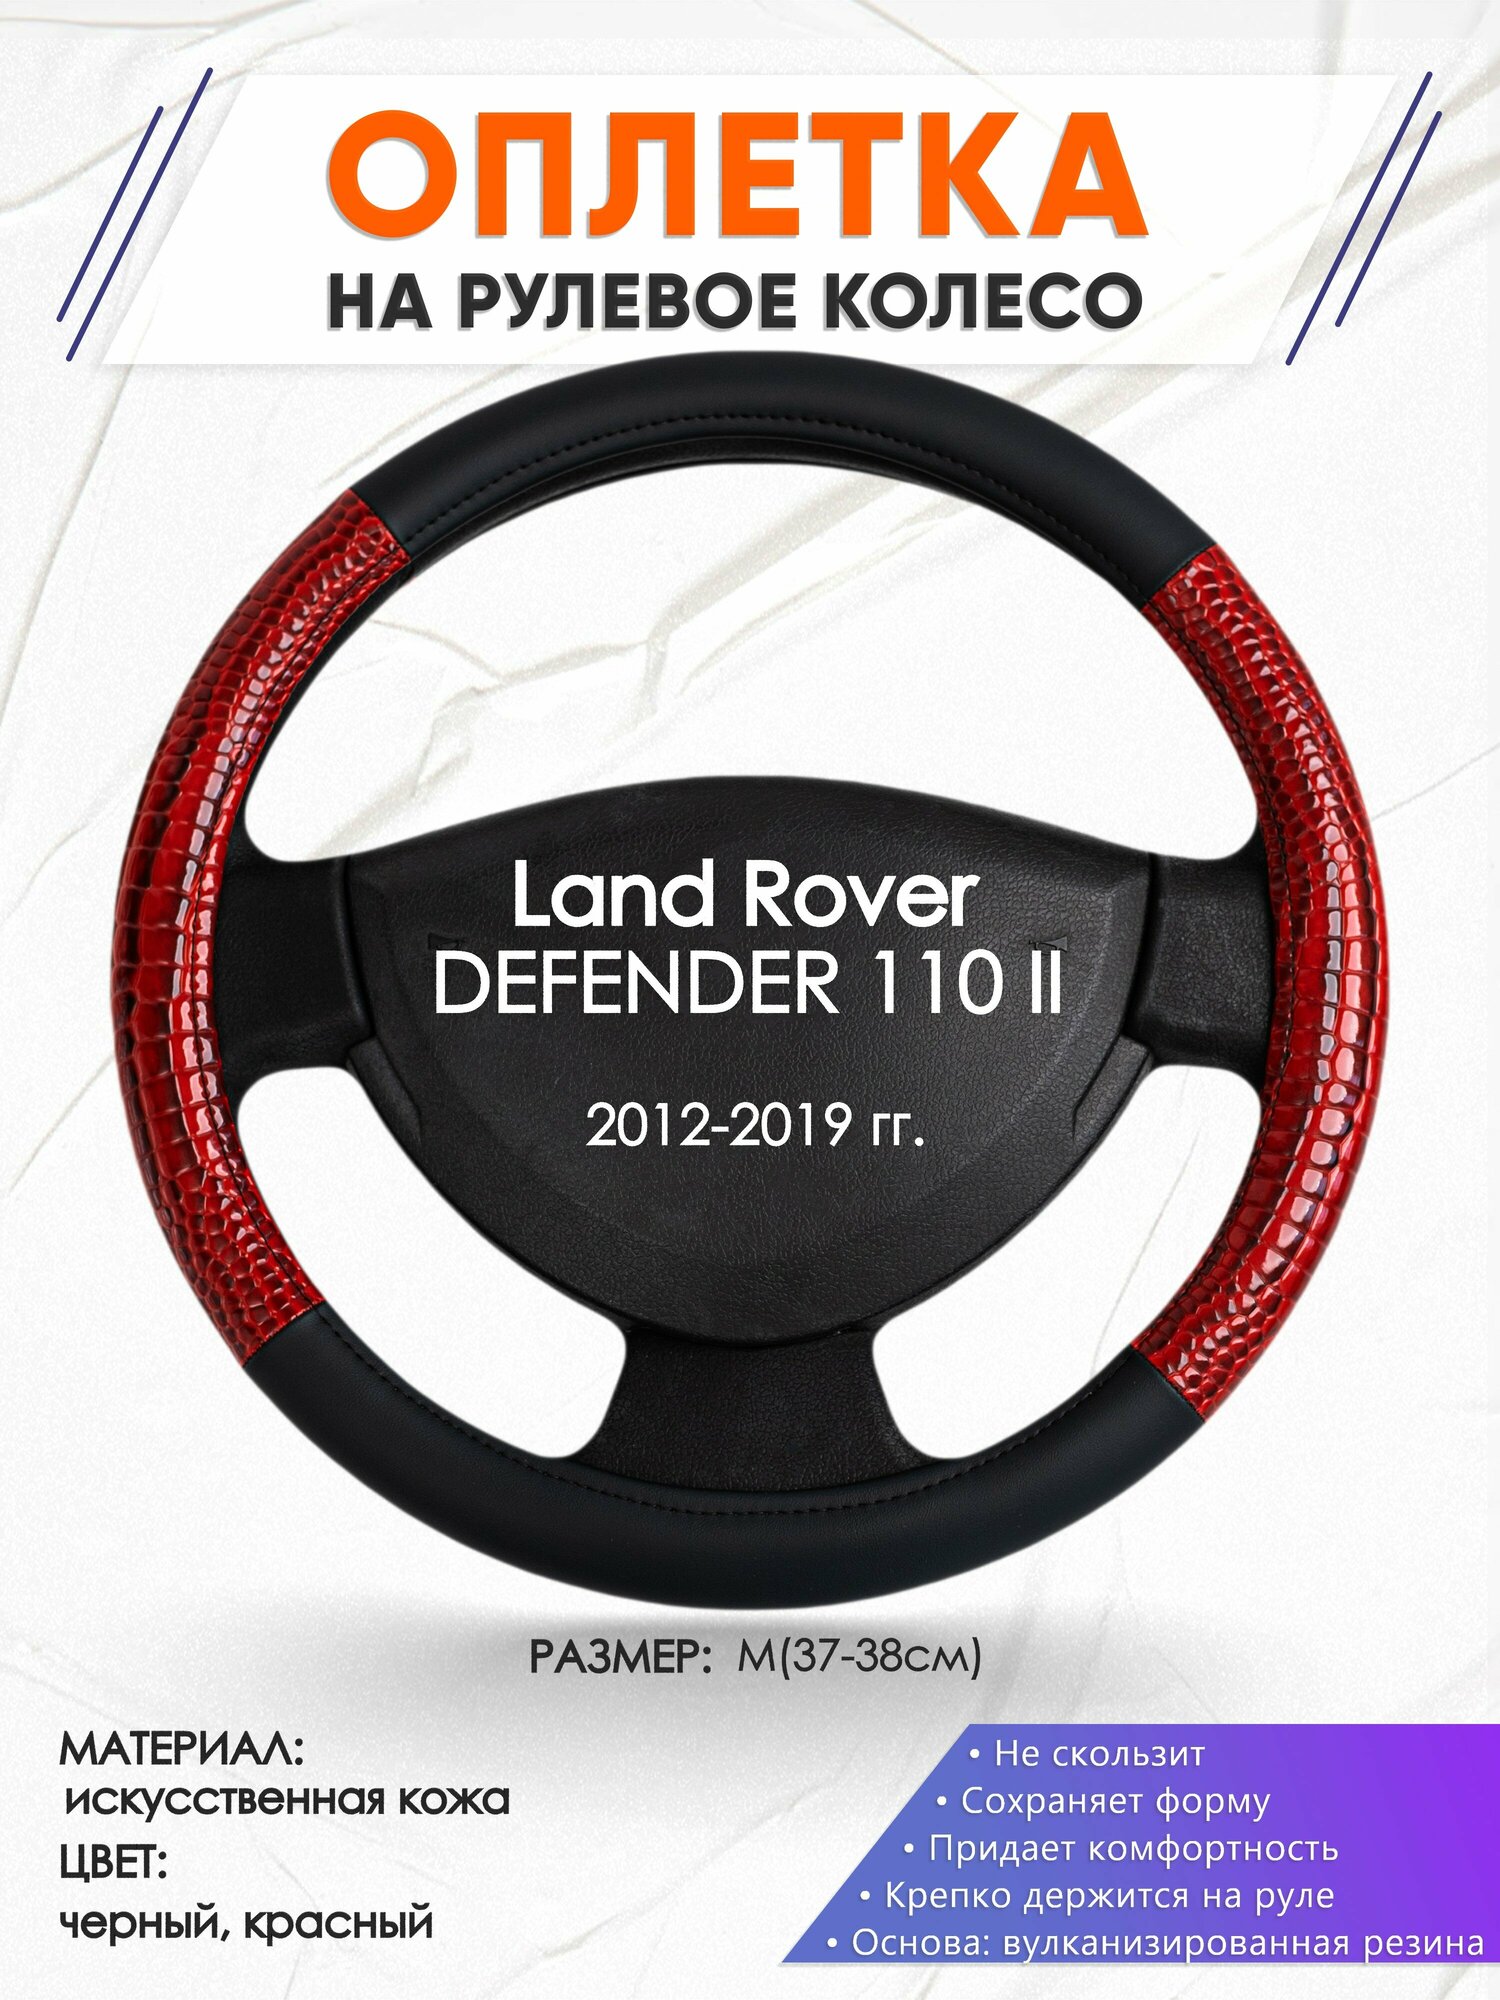 Оплетка наруль для Land Rover DEFENDER 110 2(Ленд Ровер Дефендер 110) 2012-2019 годов выпуска, размер M(37-38см), Искусственная кожа 16